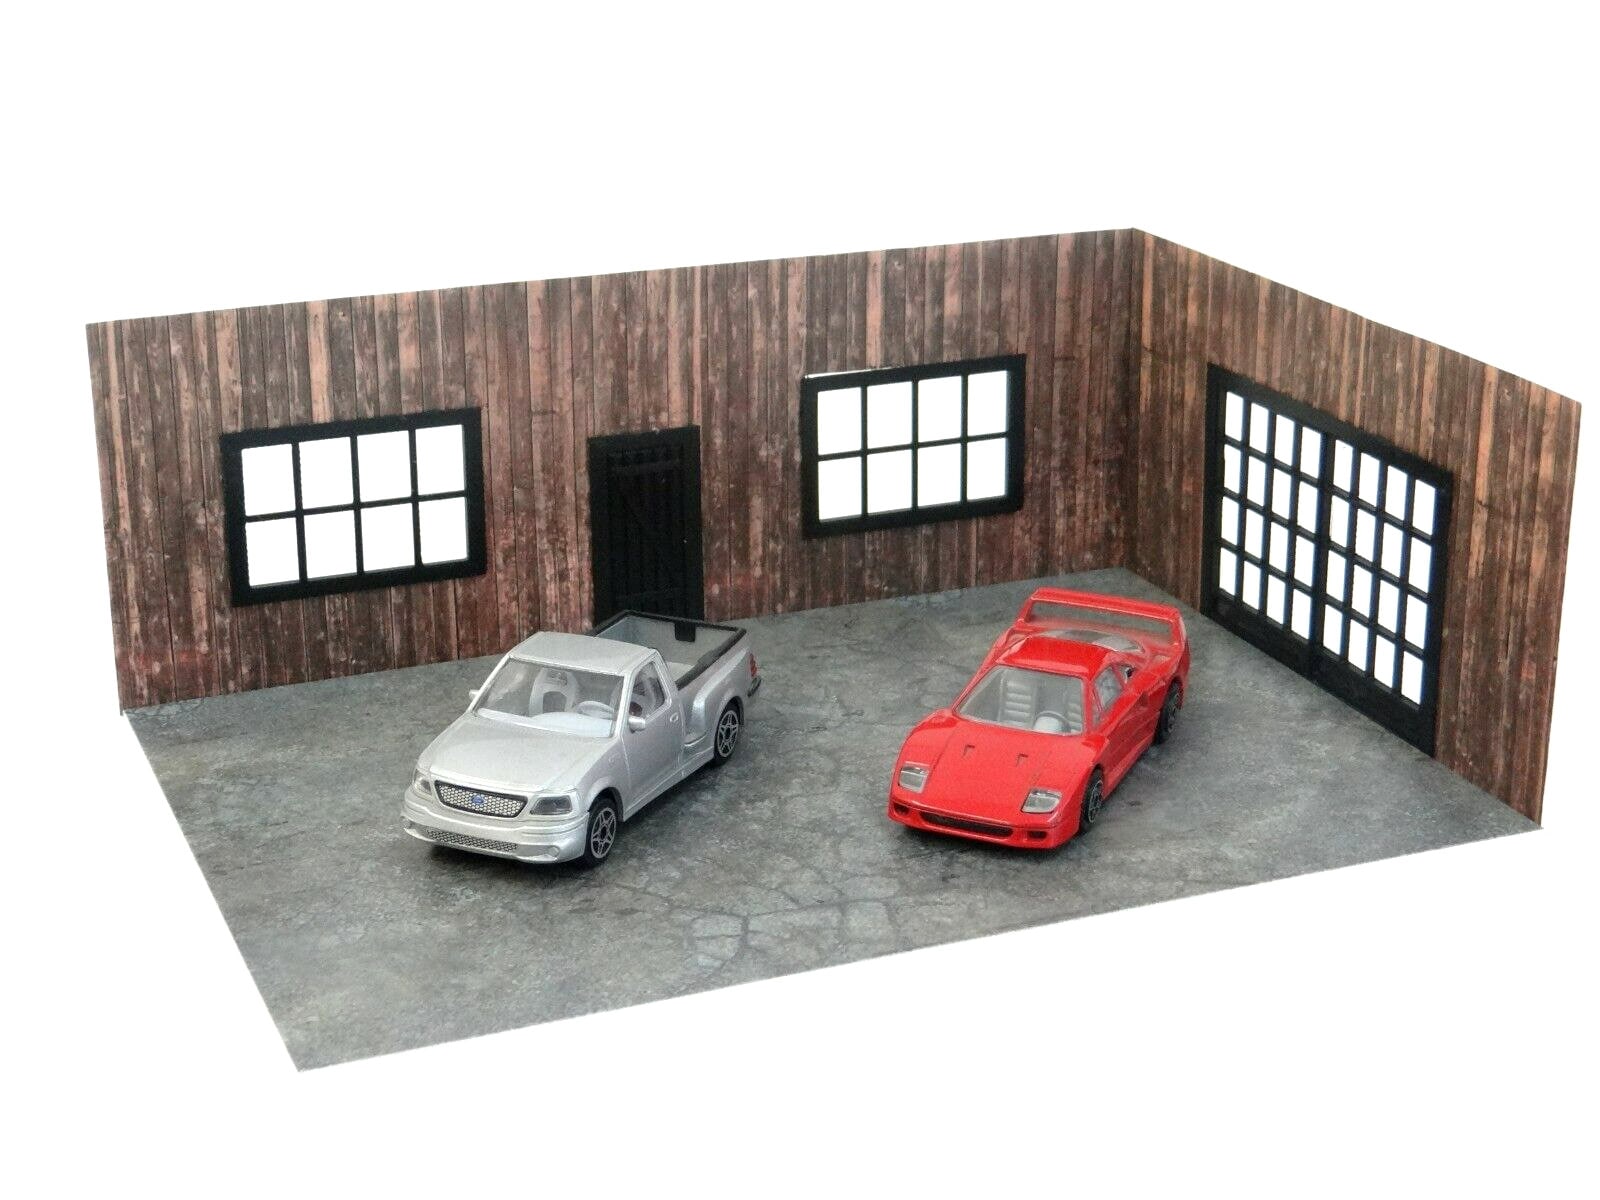 Maquette garage Train diorama au 1:43 avec tous les accessoires